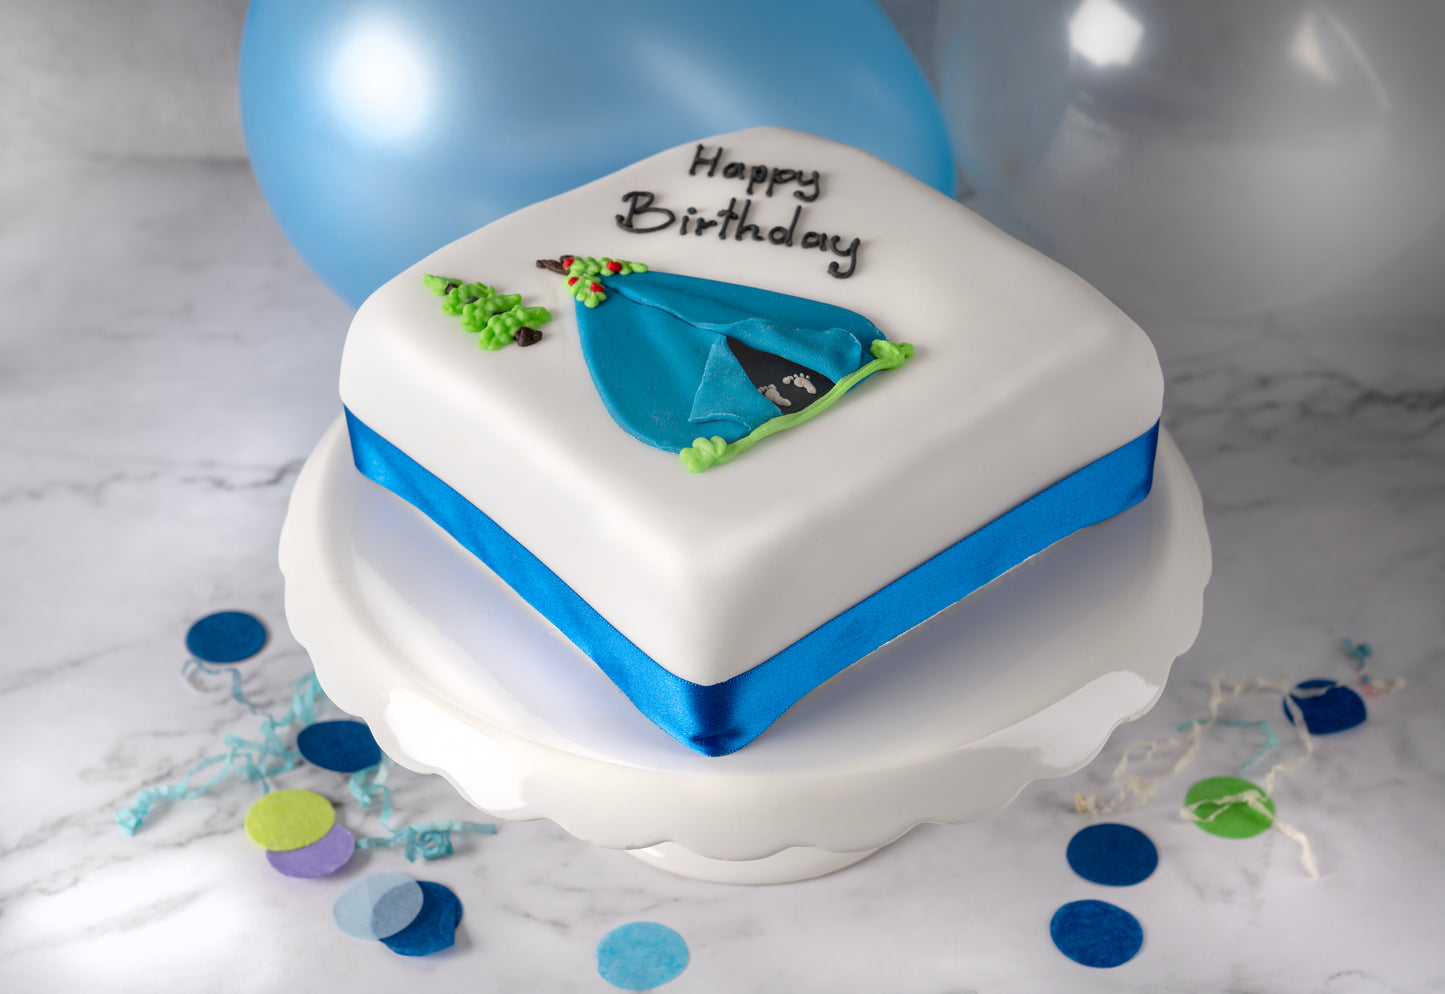 Personalised Celebration Cake